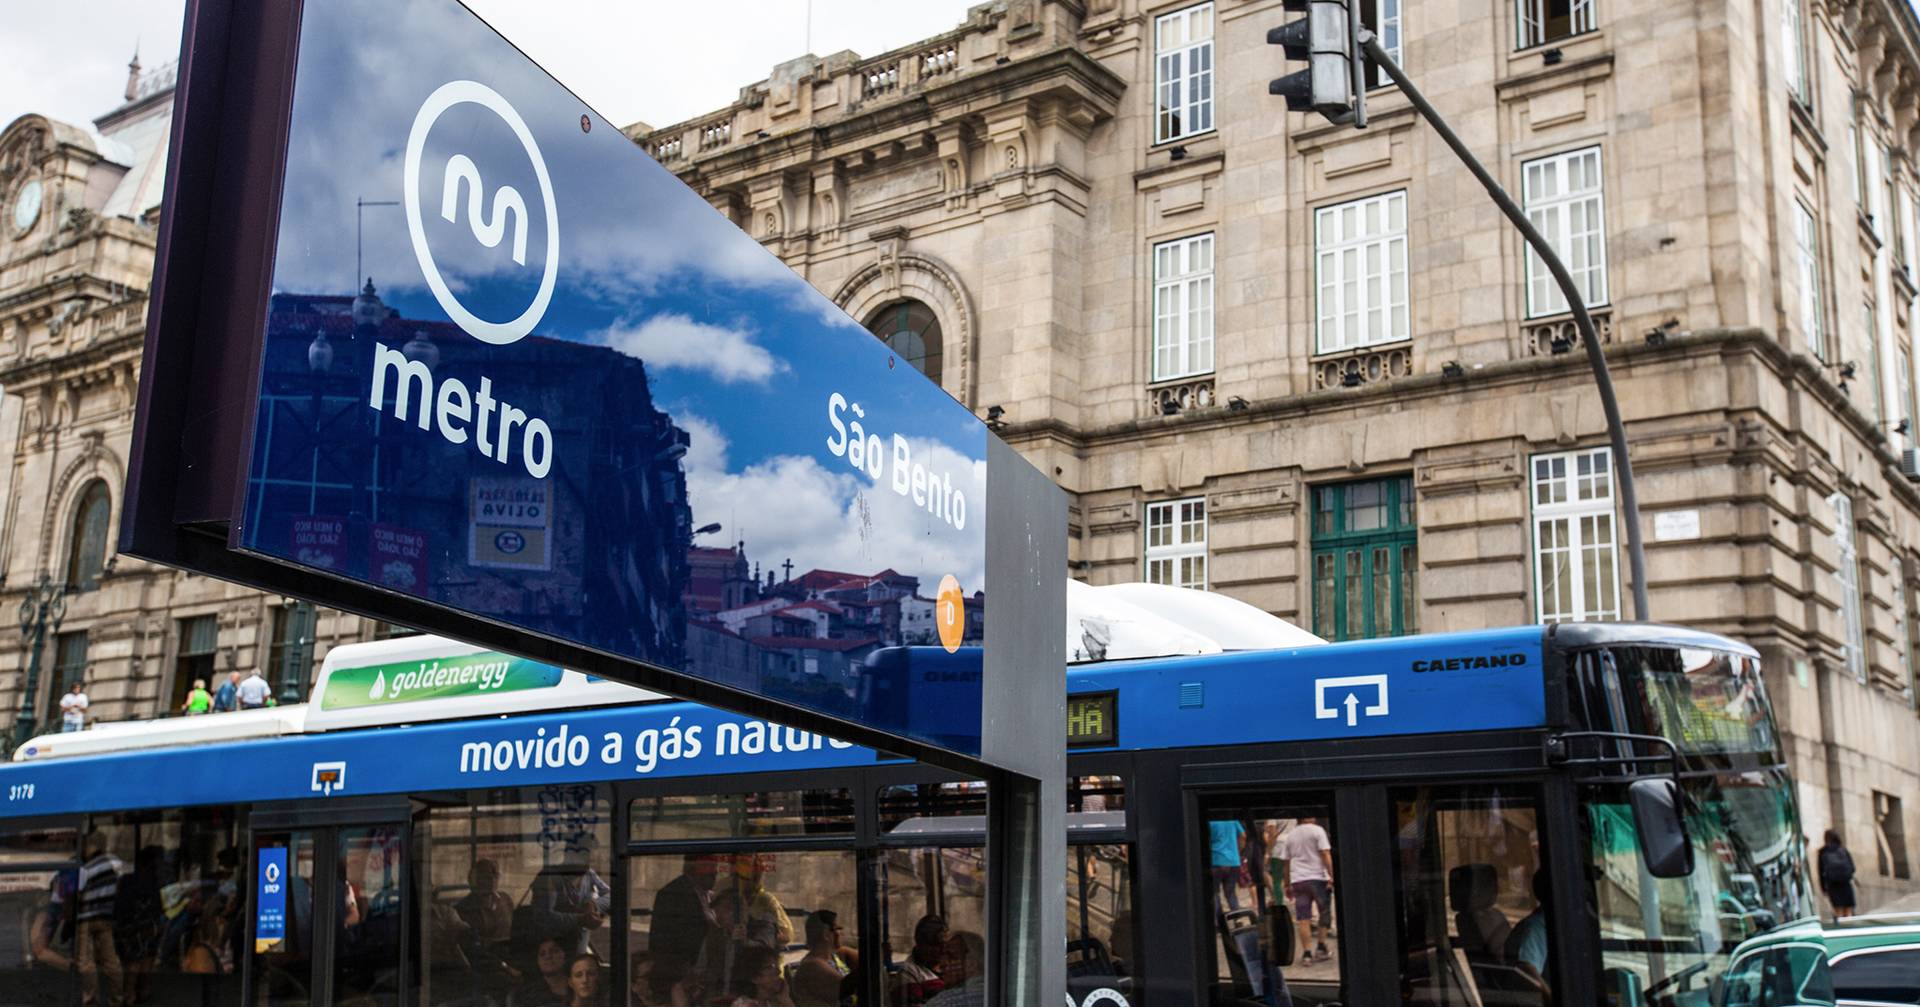 No futuro, para andar de autocarro e Metro no Porto bastará encostar o cartão bancário ao validador